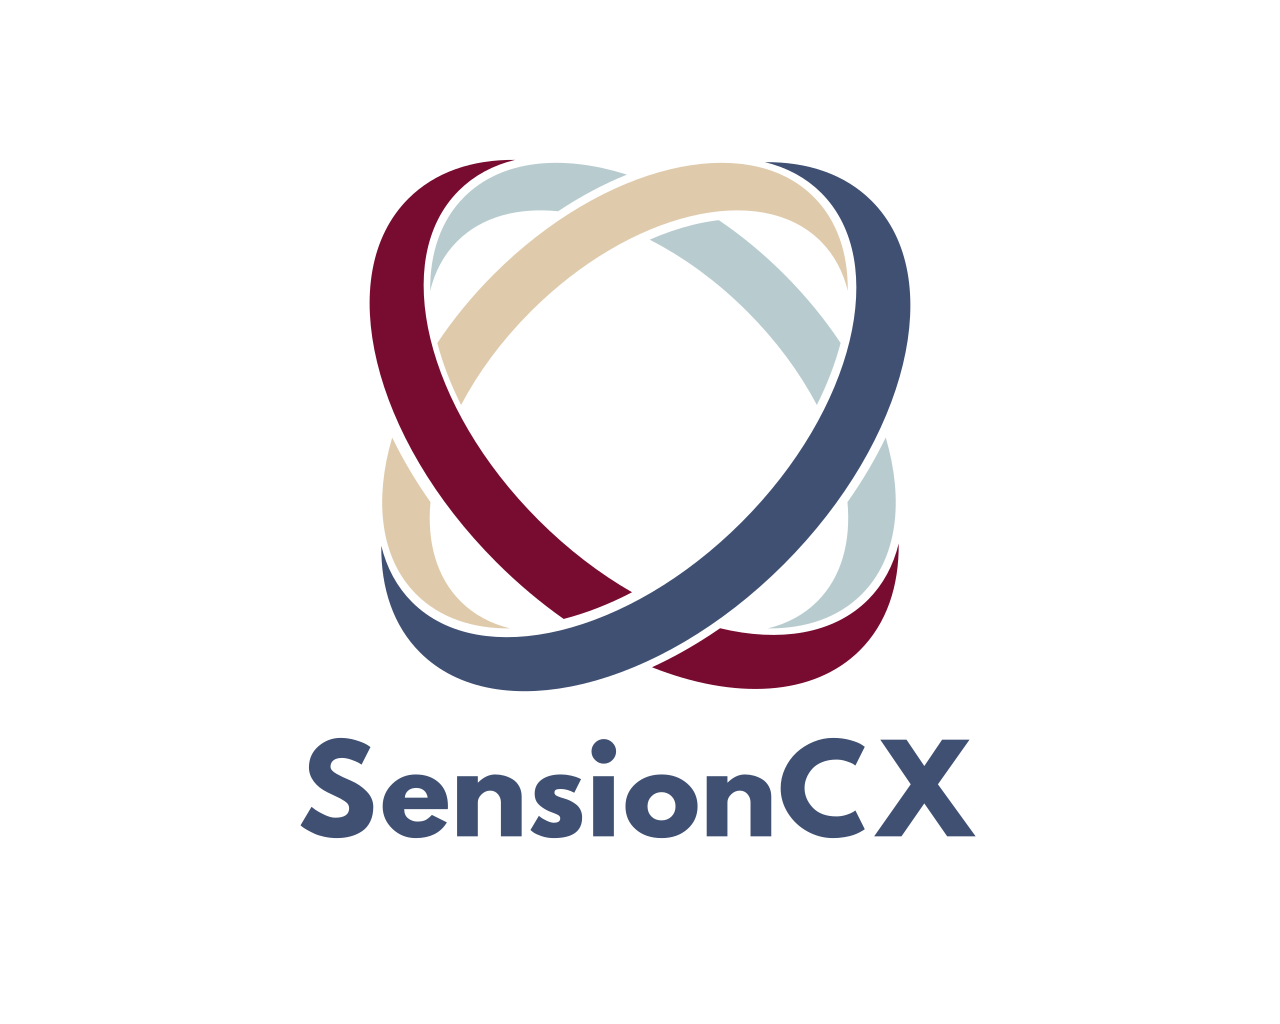 SensionCX